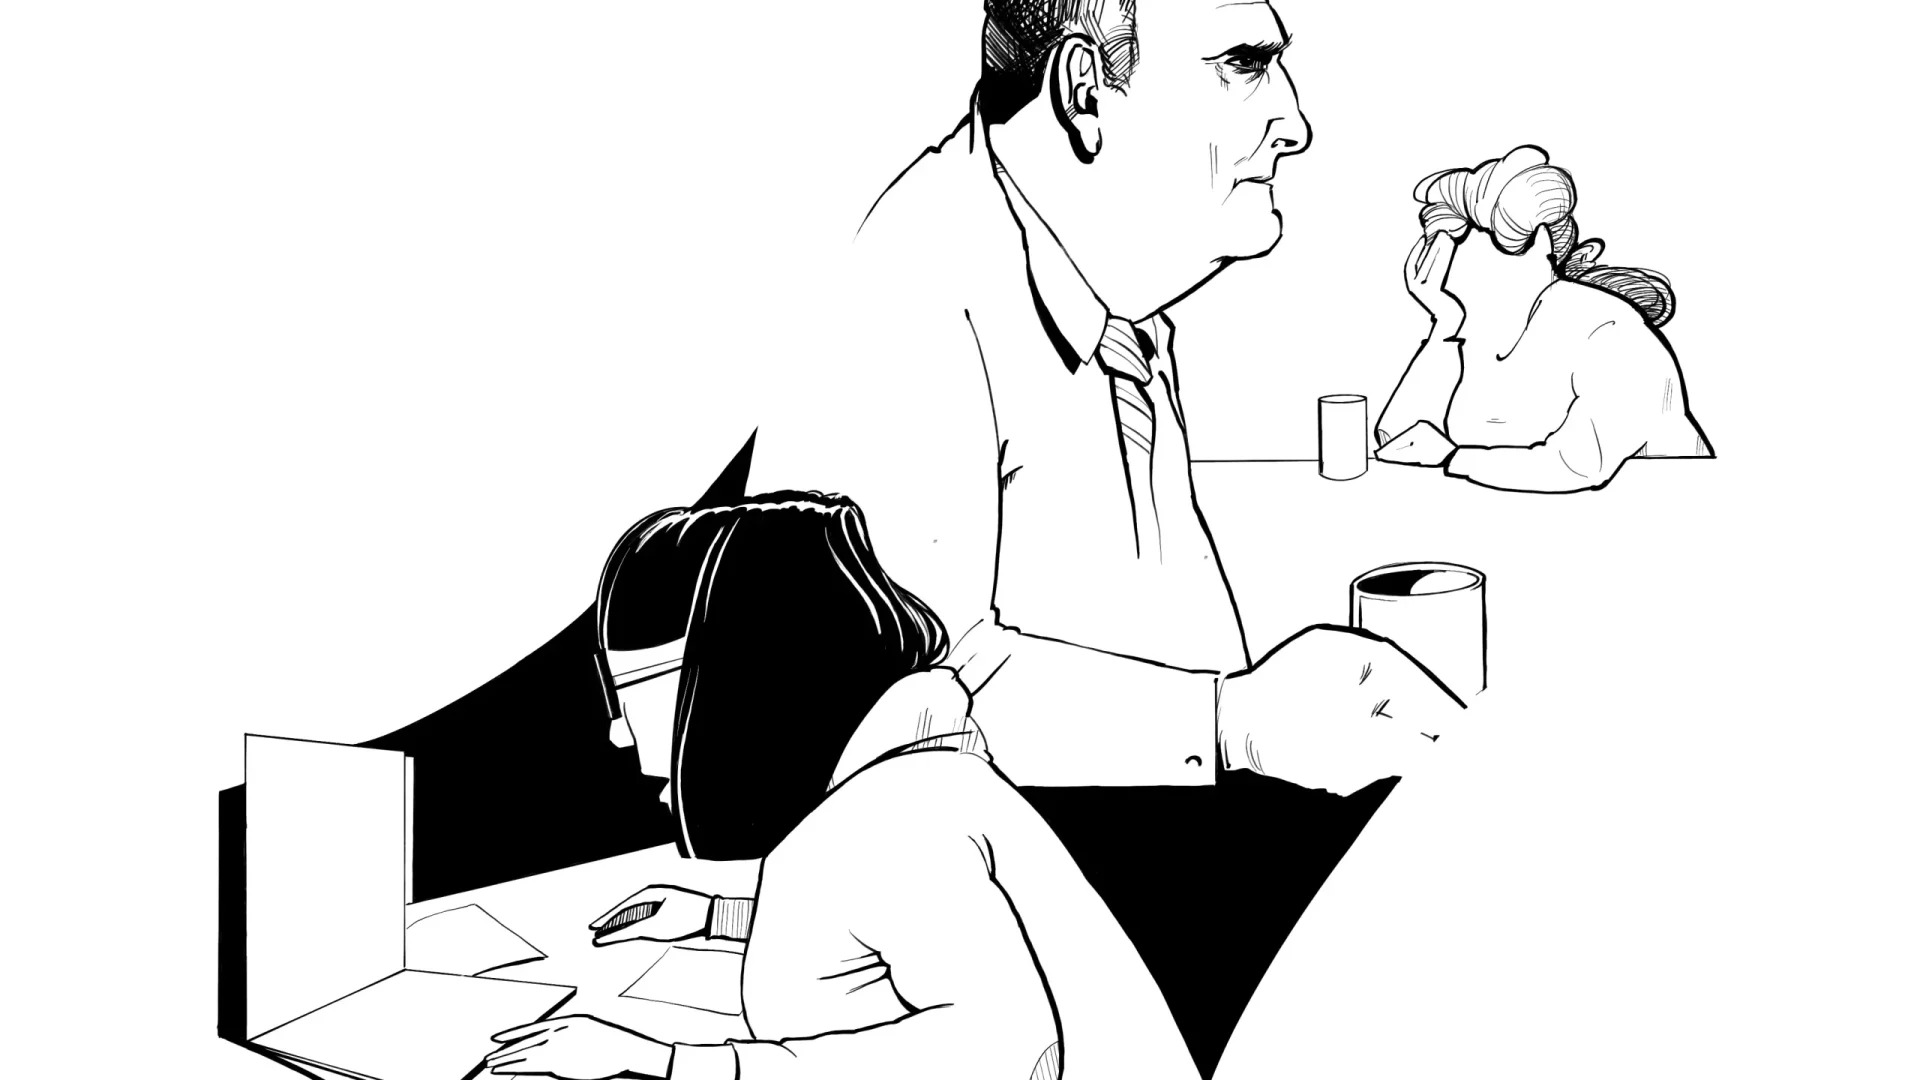 Illustration av 3 personer i svartvitt